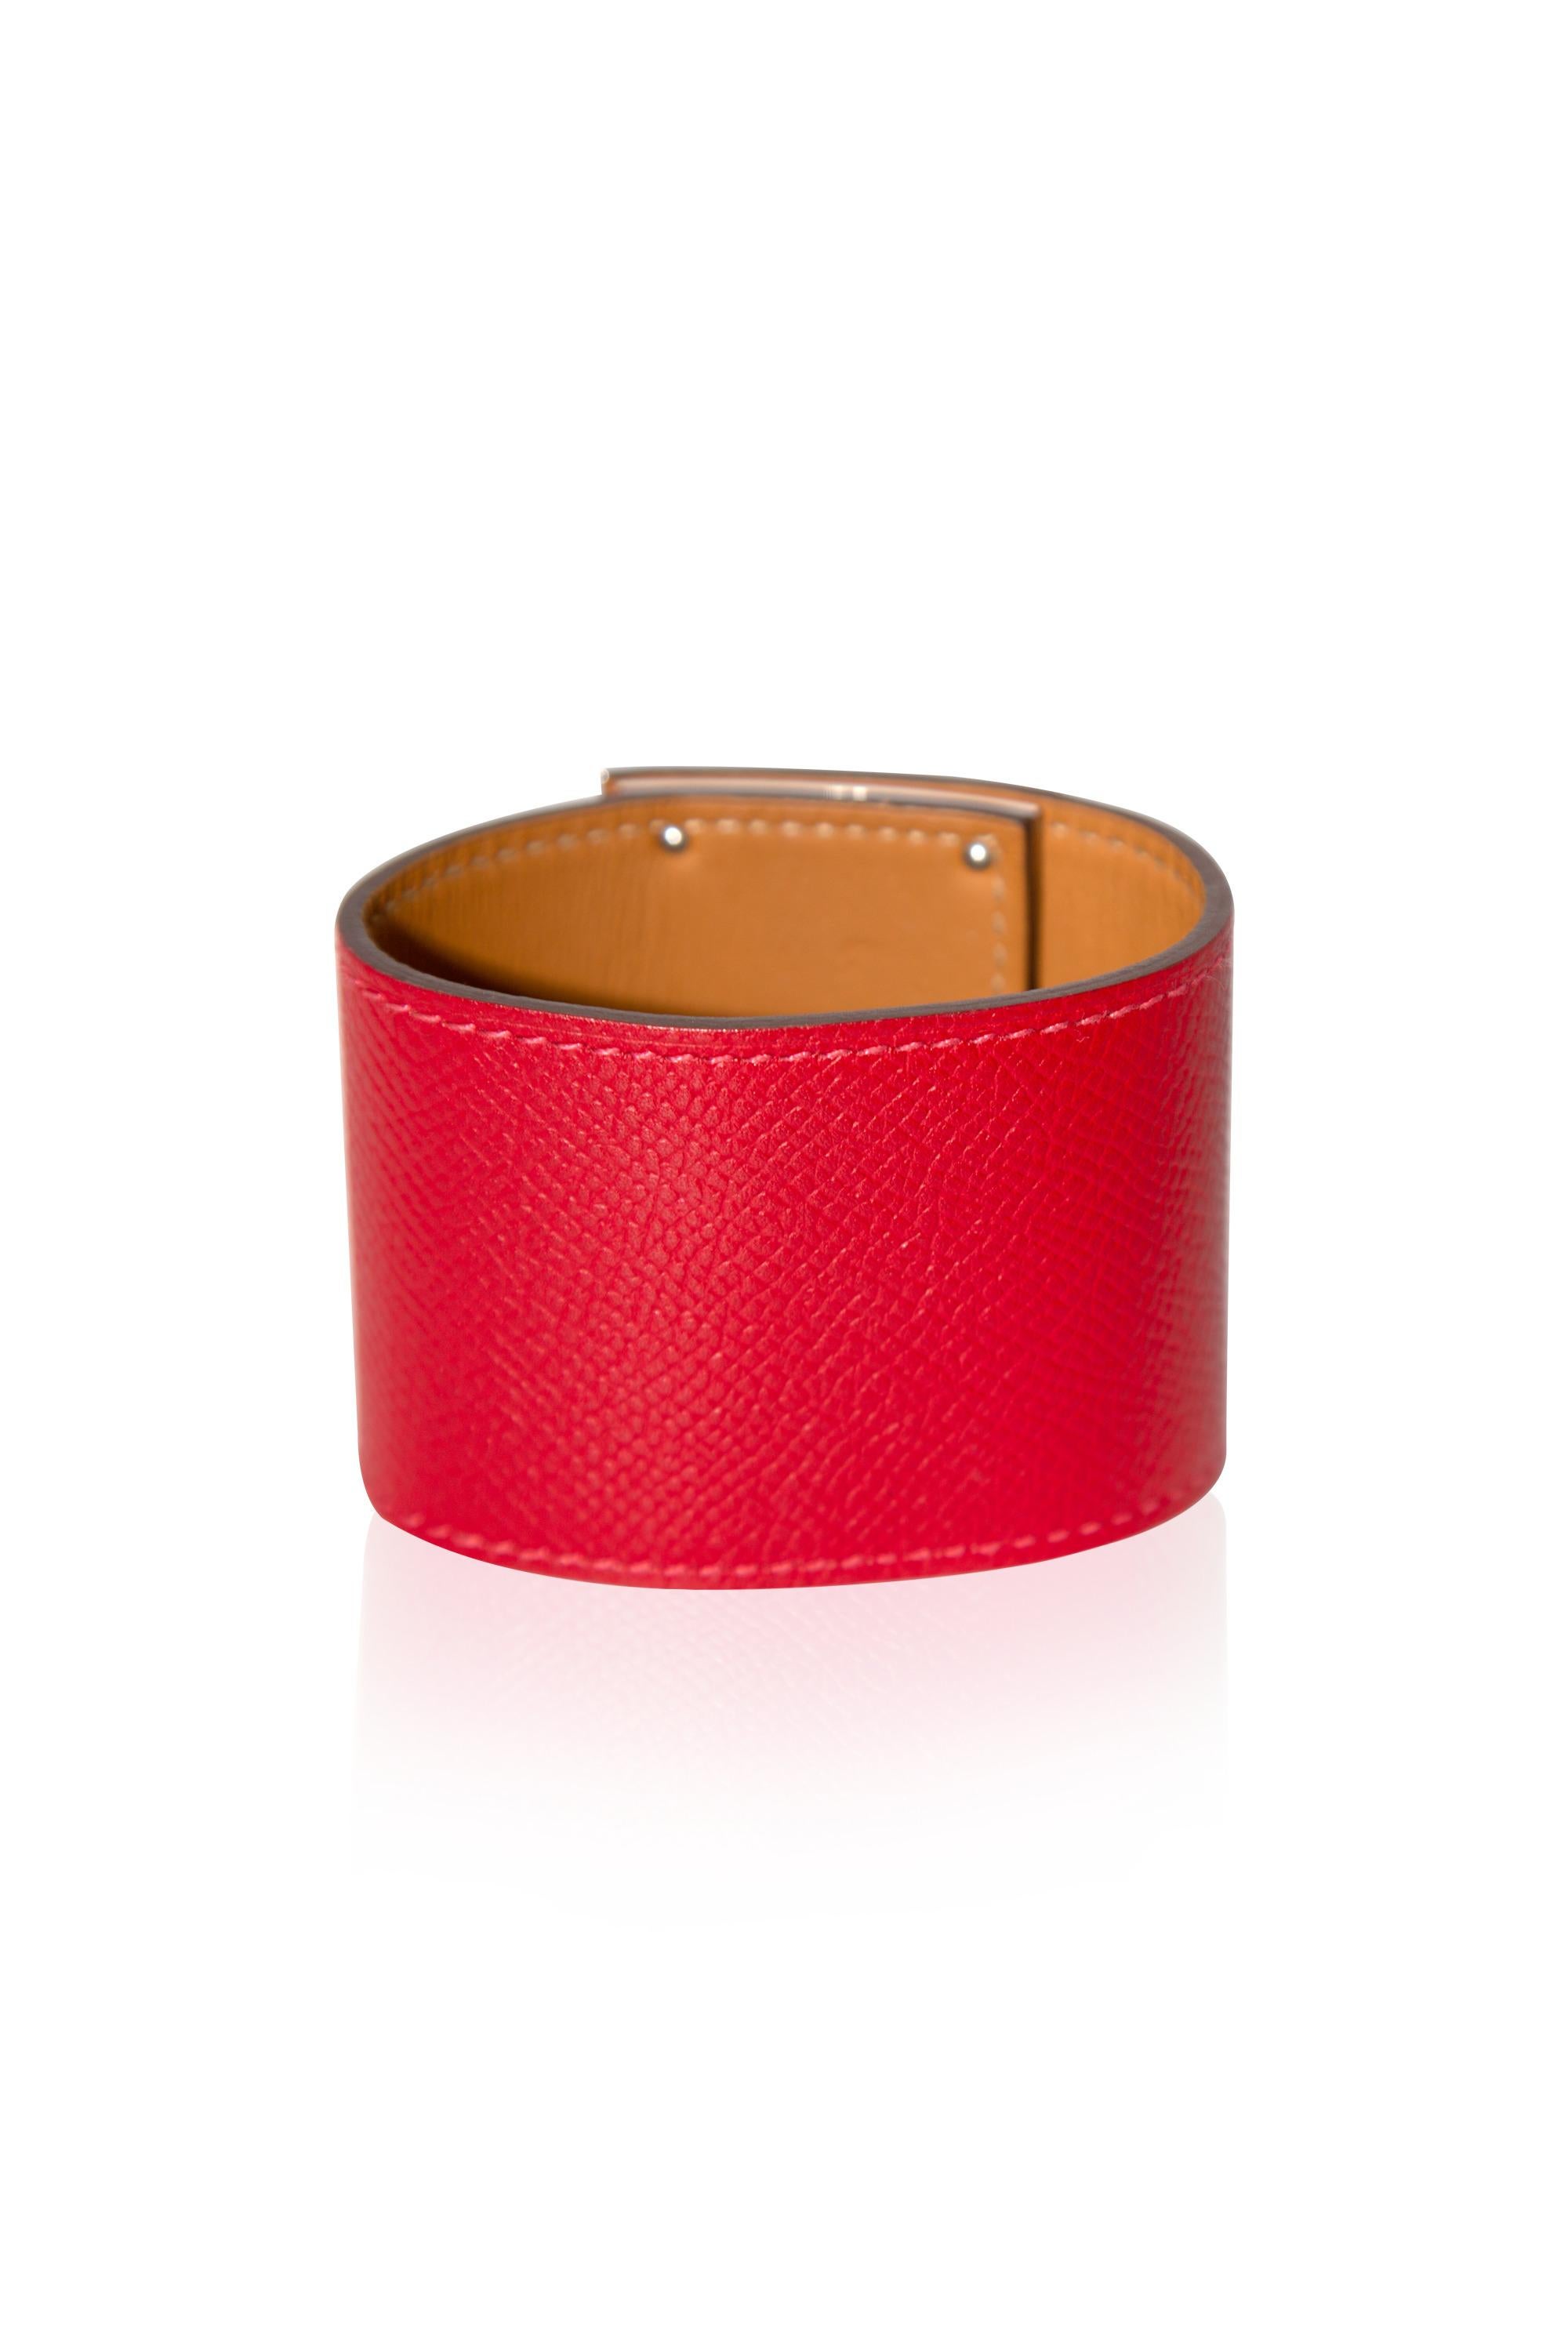 Le bracelet Kelly Dog Extreme en rouge Epsom PHW d'Hermès est un accessoire élégant et raffiné qui ajoute une touche de luxe à n'importe quelle tenue.

•Cuir d'Epsom
•Matériel Palladium
•Design/One emblématique de Kelly Dog et accessoires en or